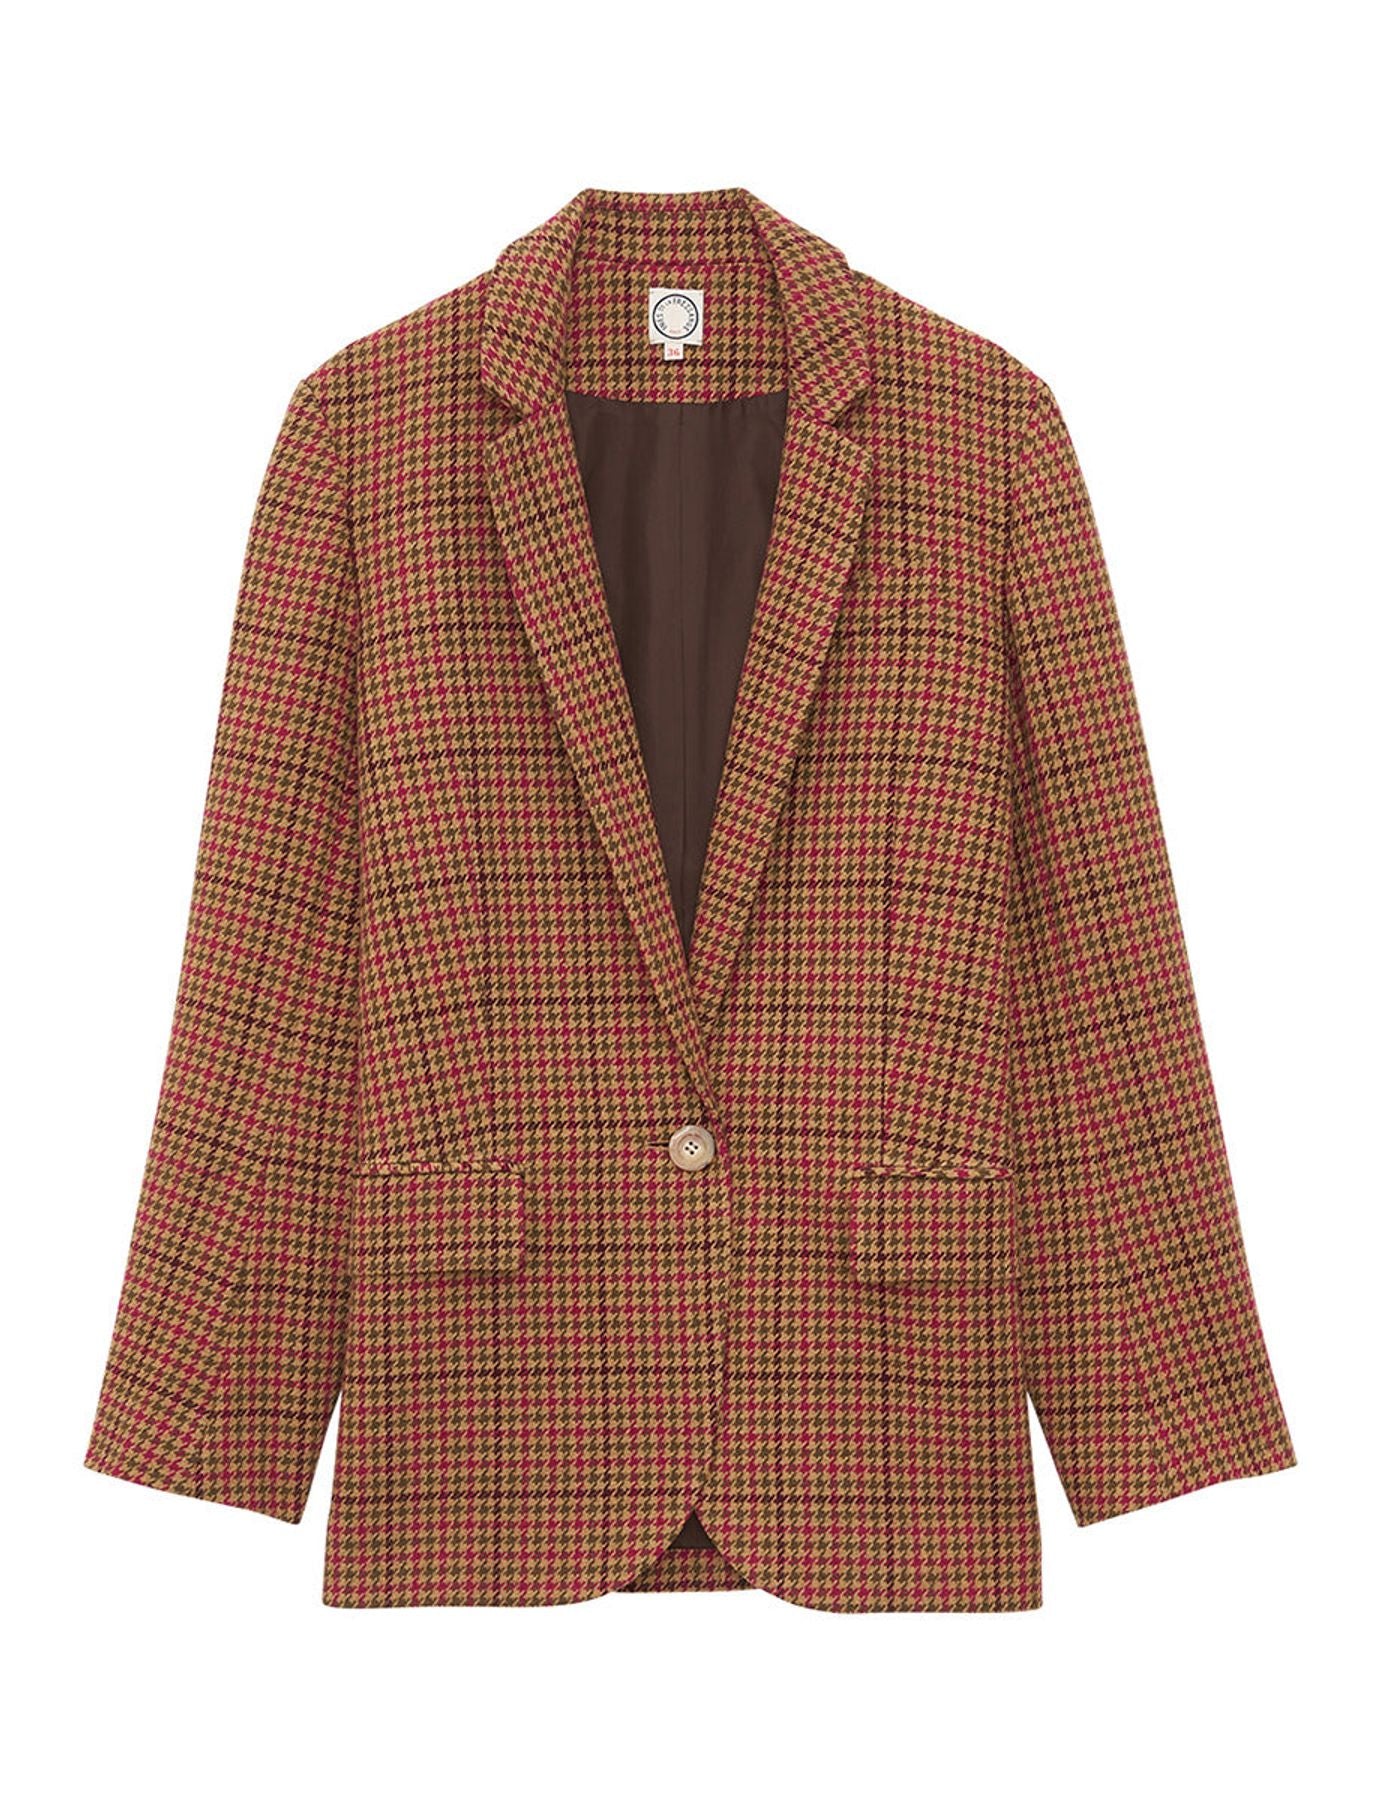 jacket-brown-houndstooth-wool